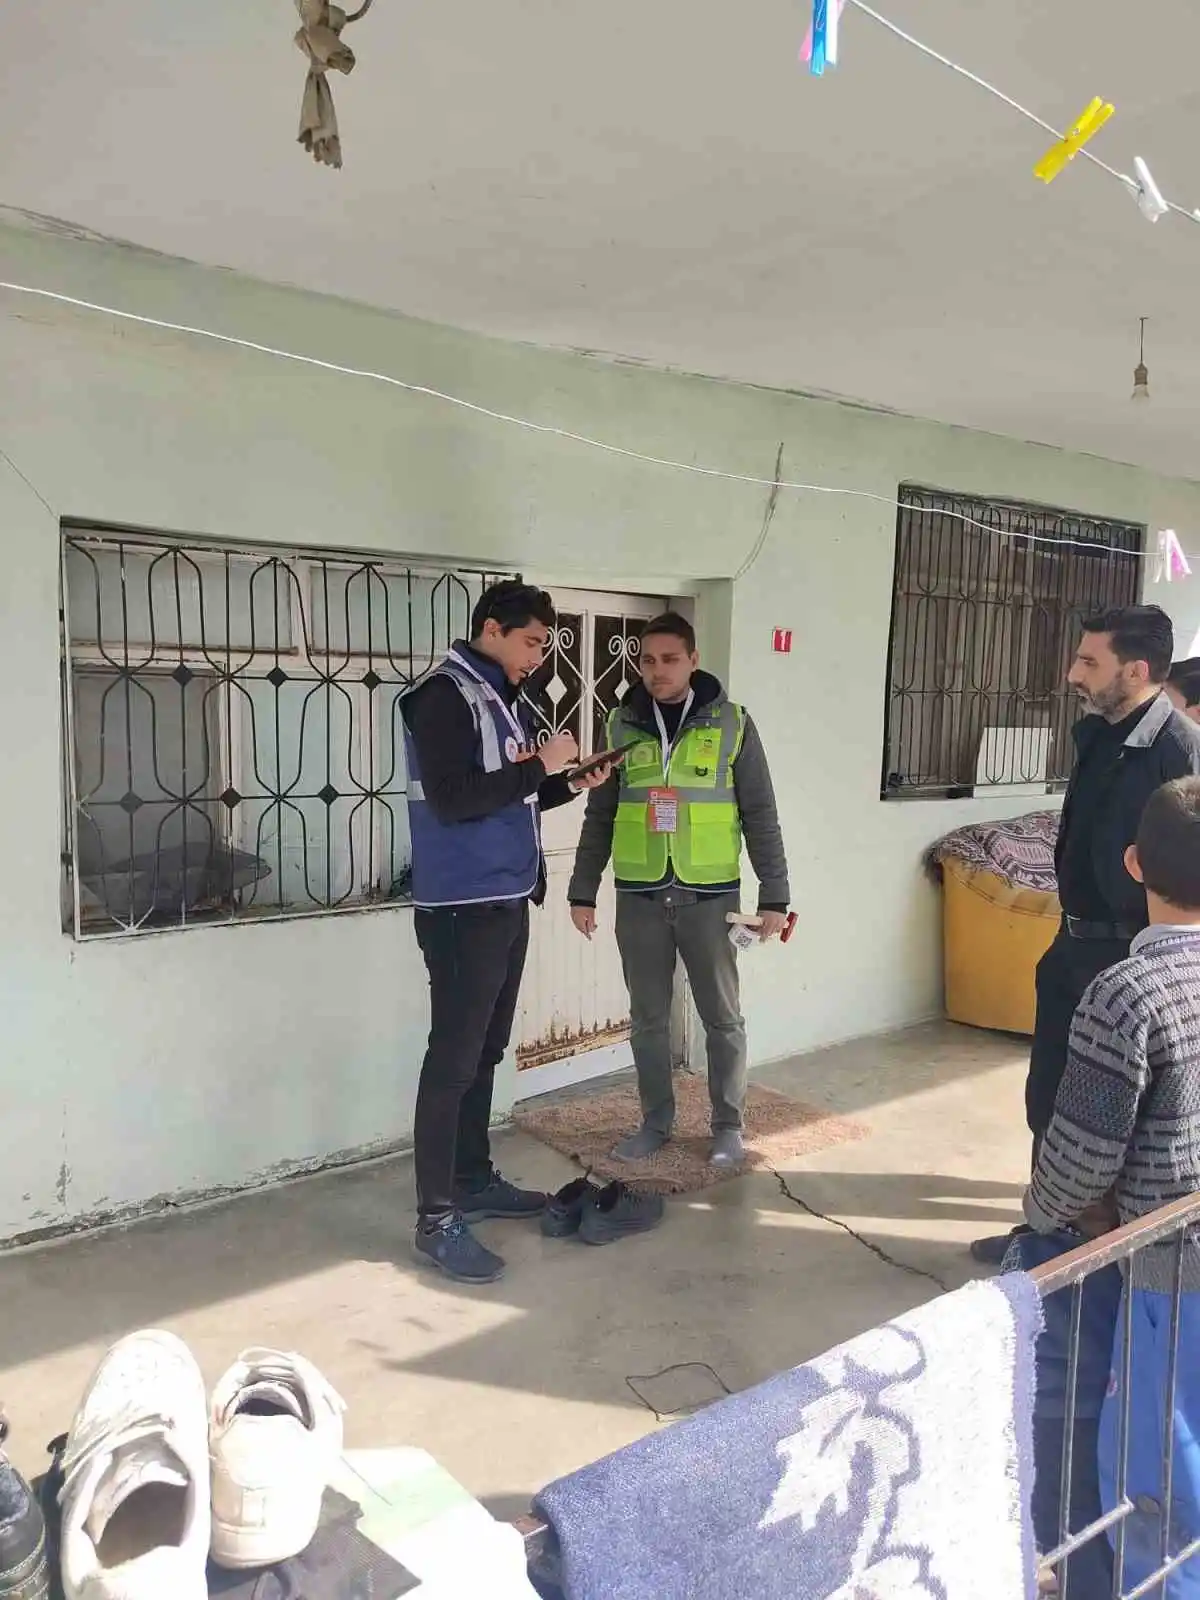 Antalya Büyükşehir Belediyesi ekipleri sahada hasar tespit çalışmalarını sürdürüyor
